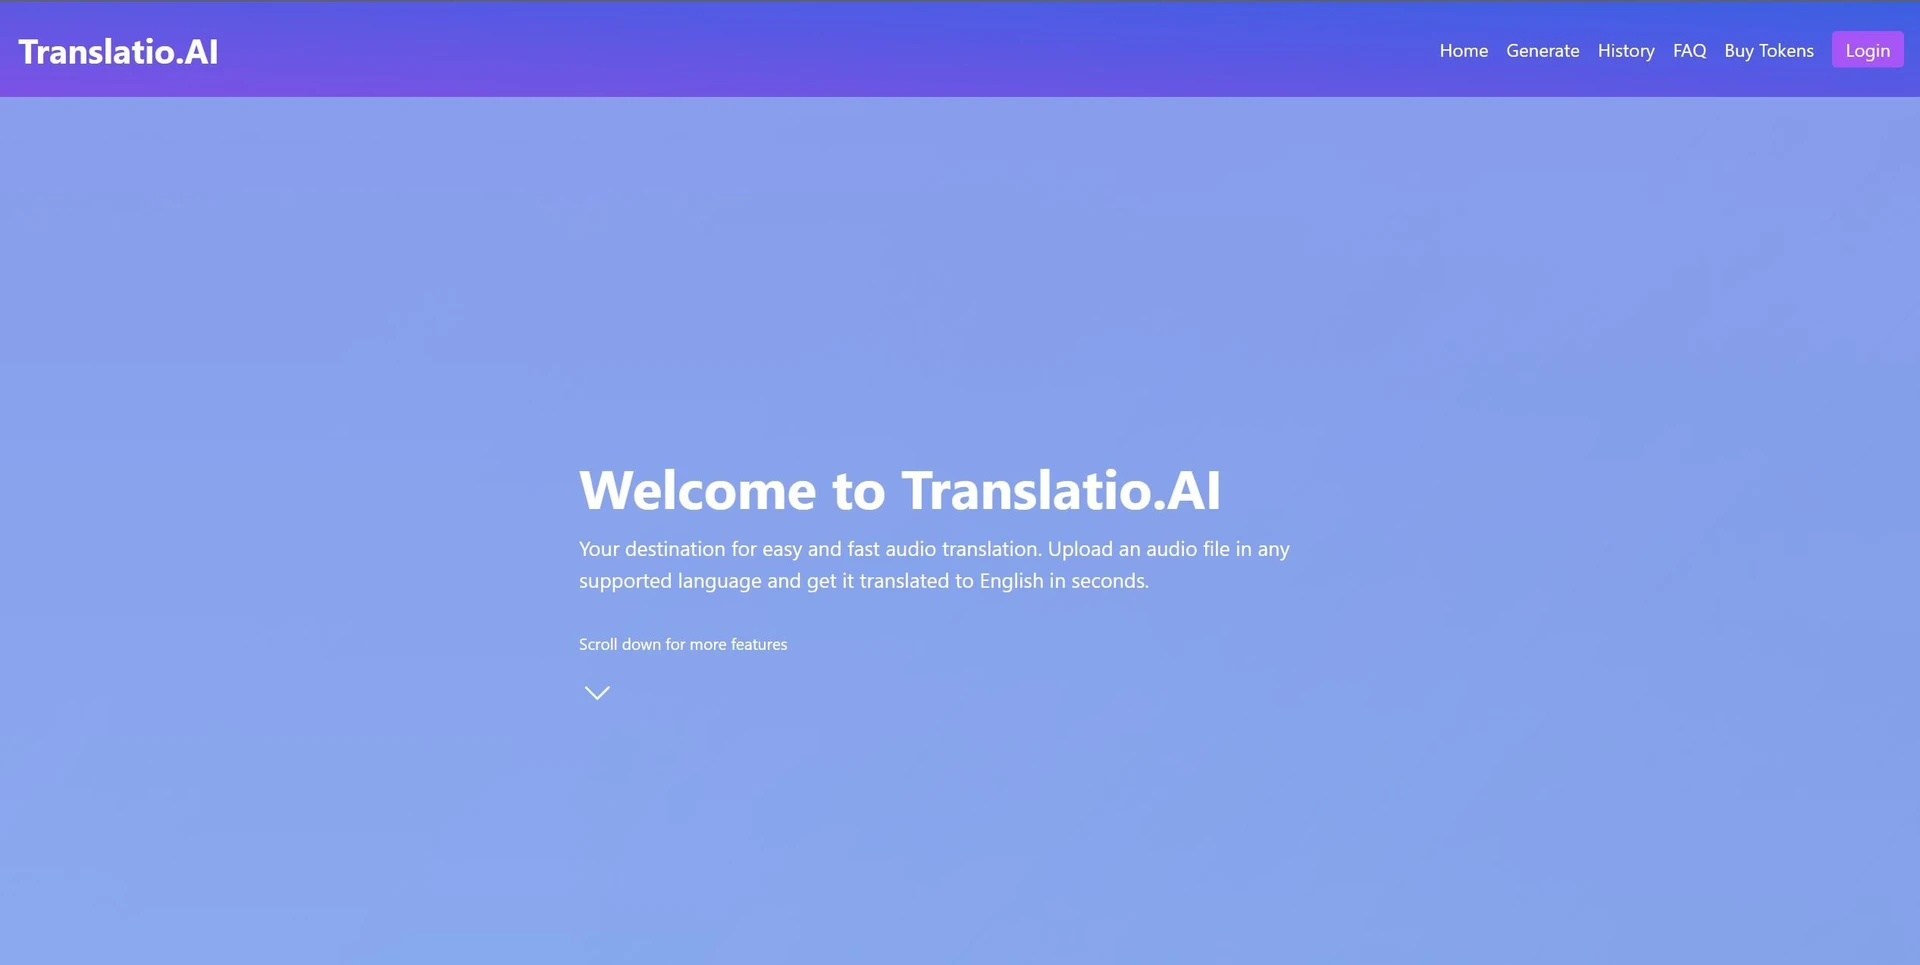 Translatio.AIwebsite picture